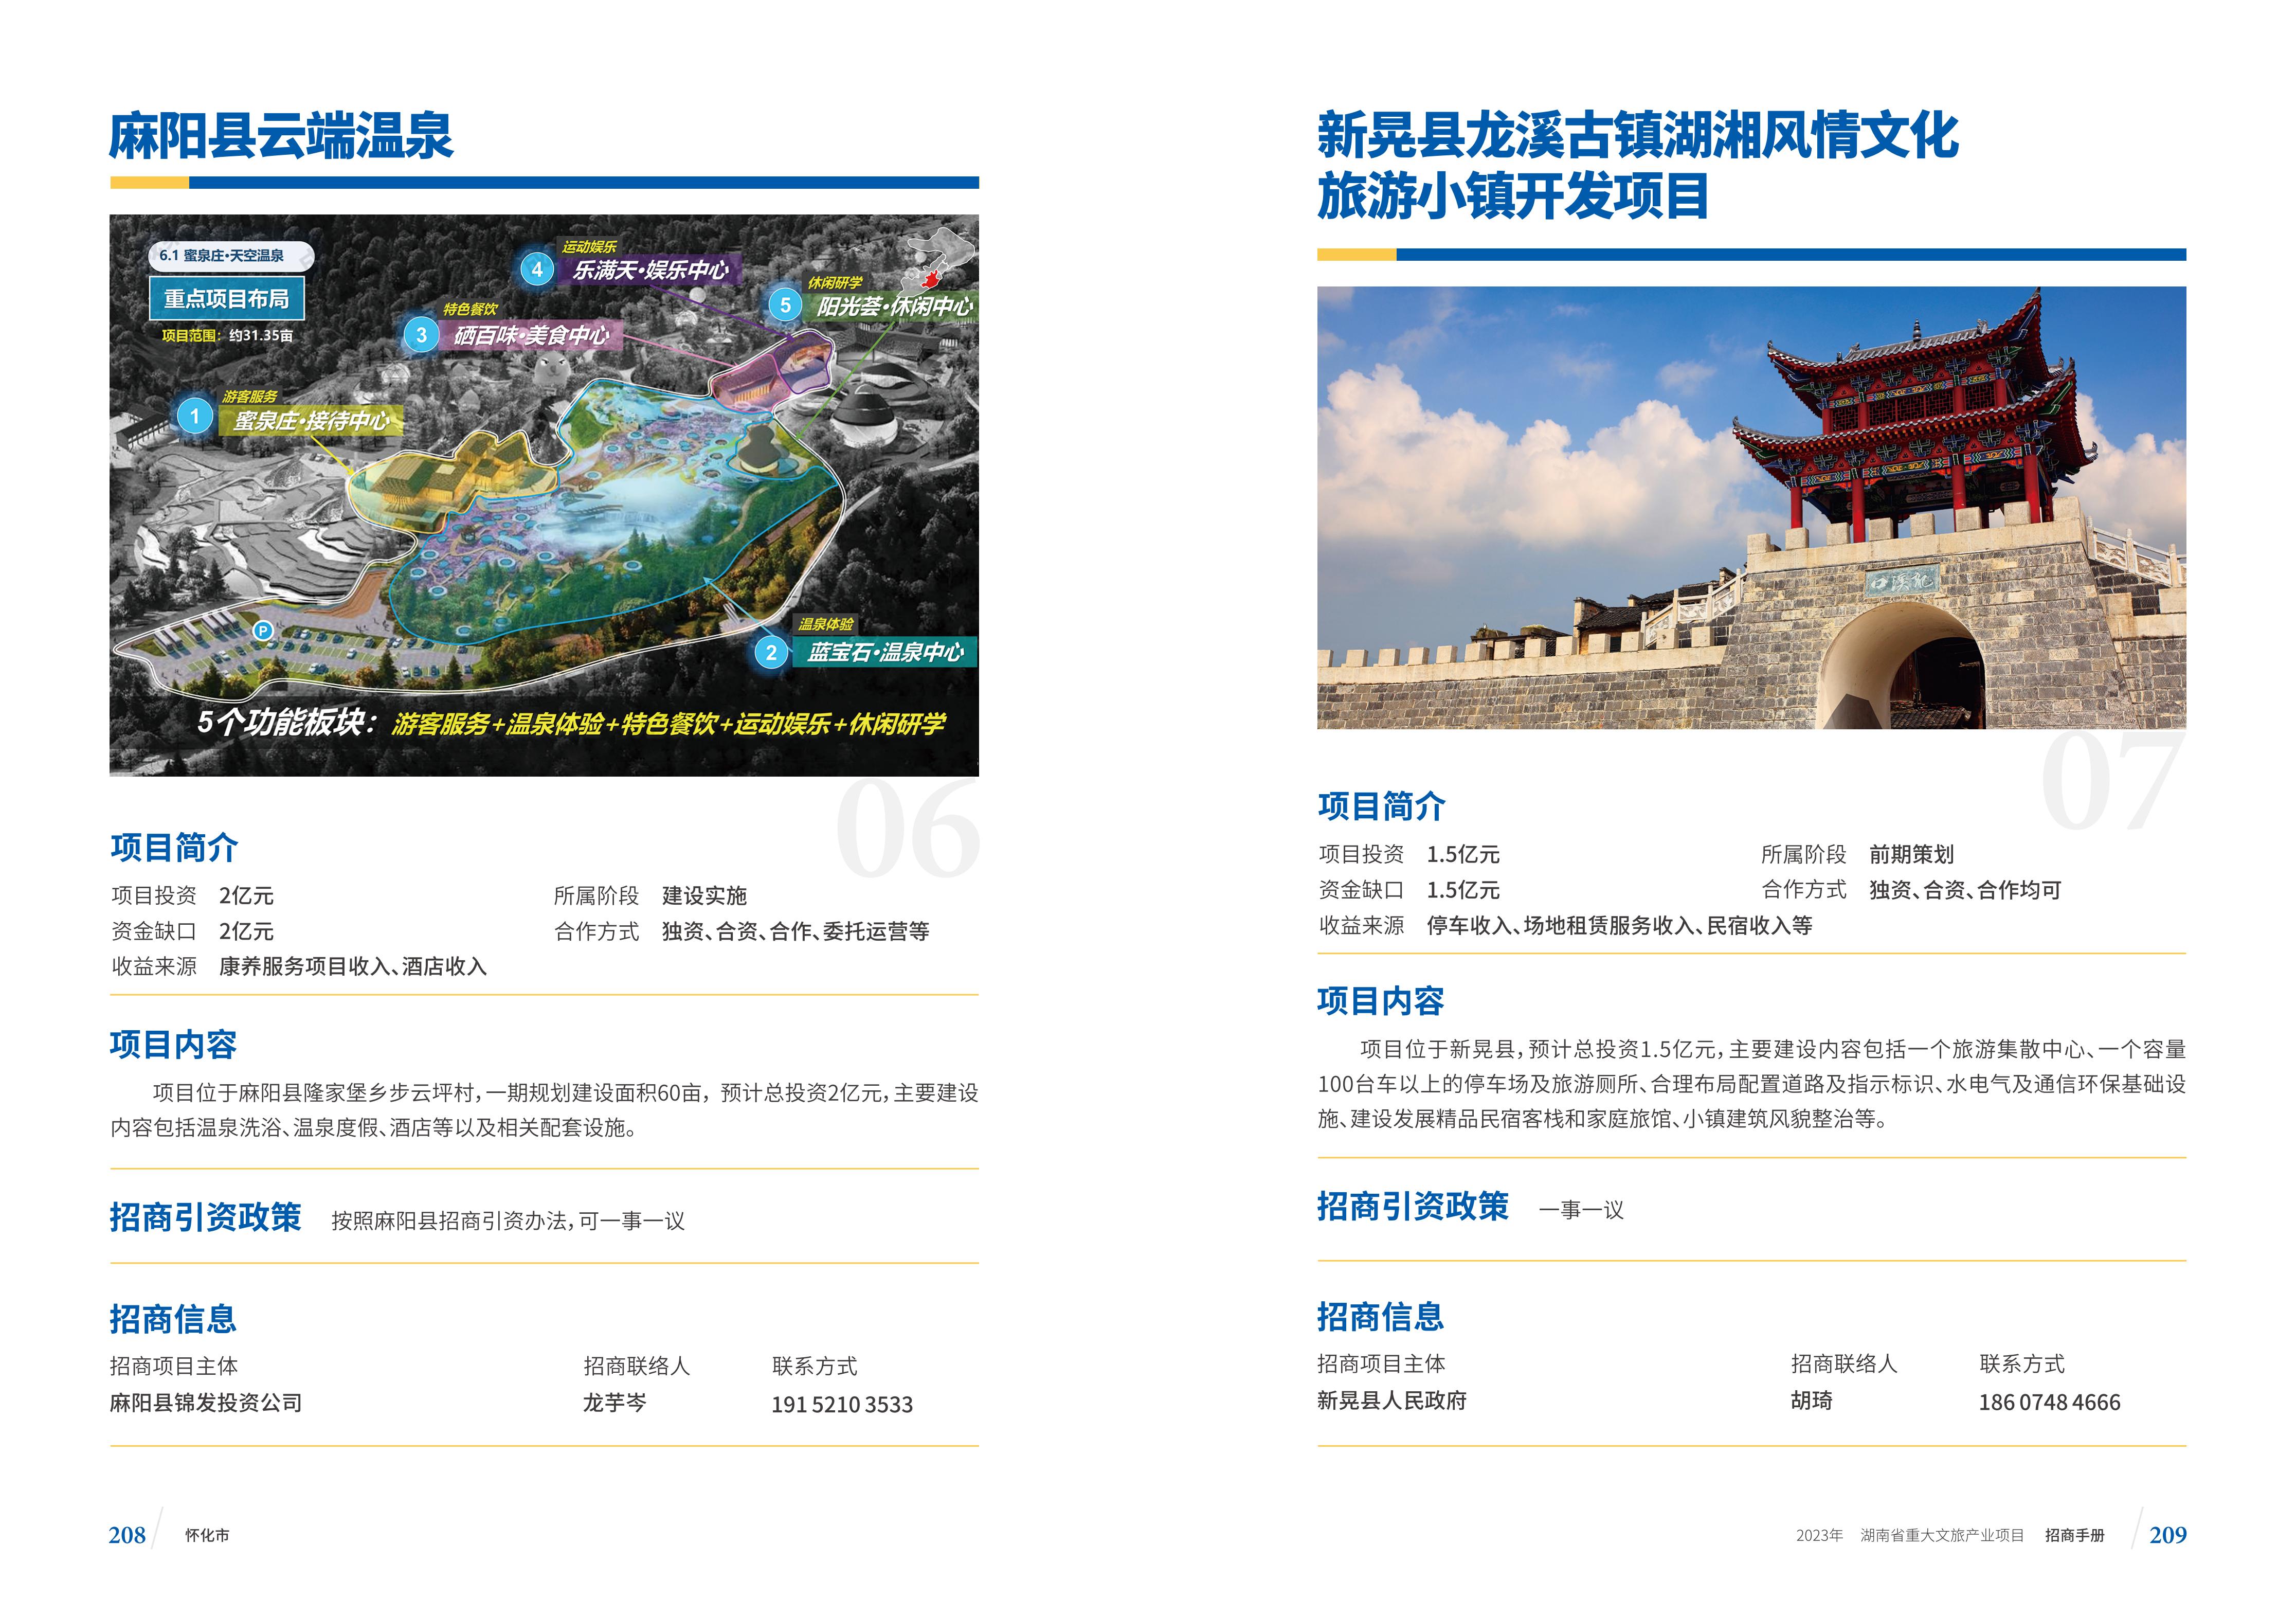 湖南省重大文旅产业项目招手册线上链接版_112.jpg